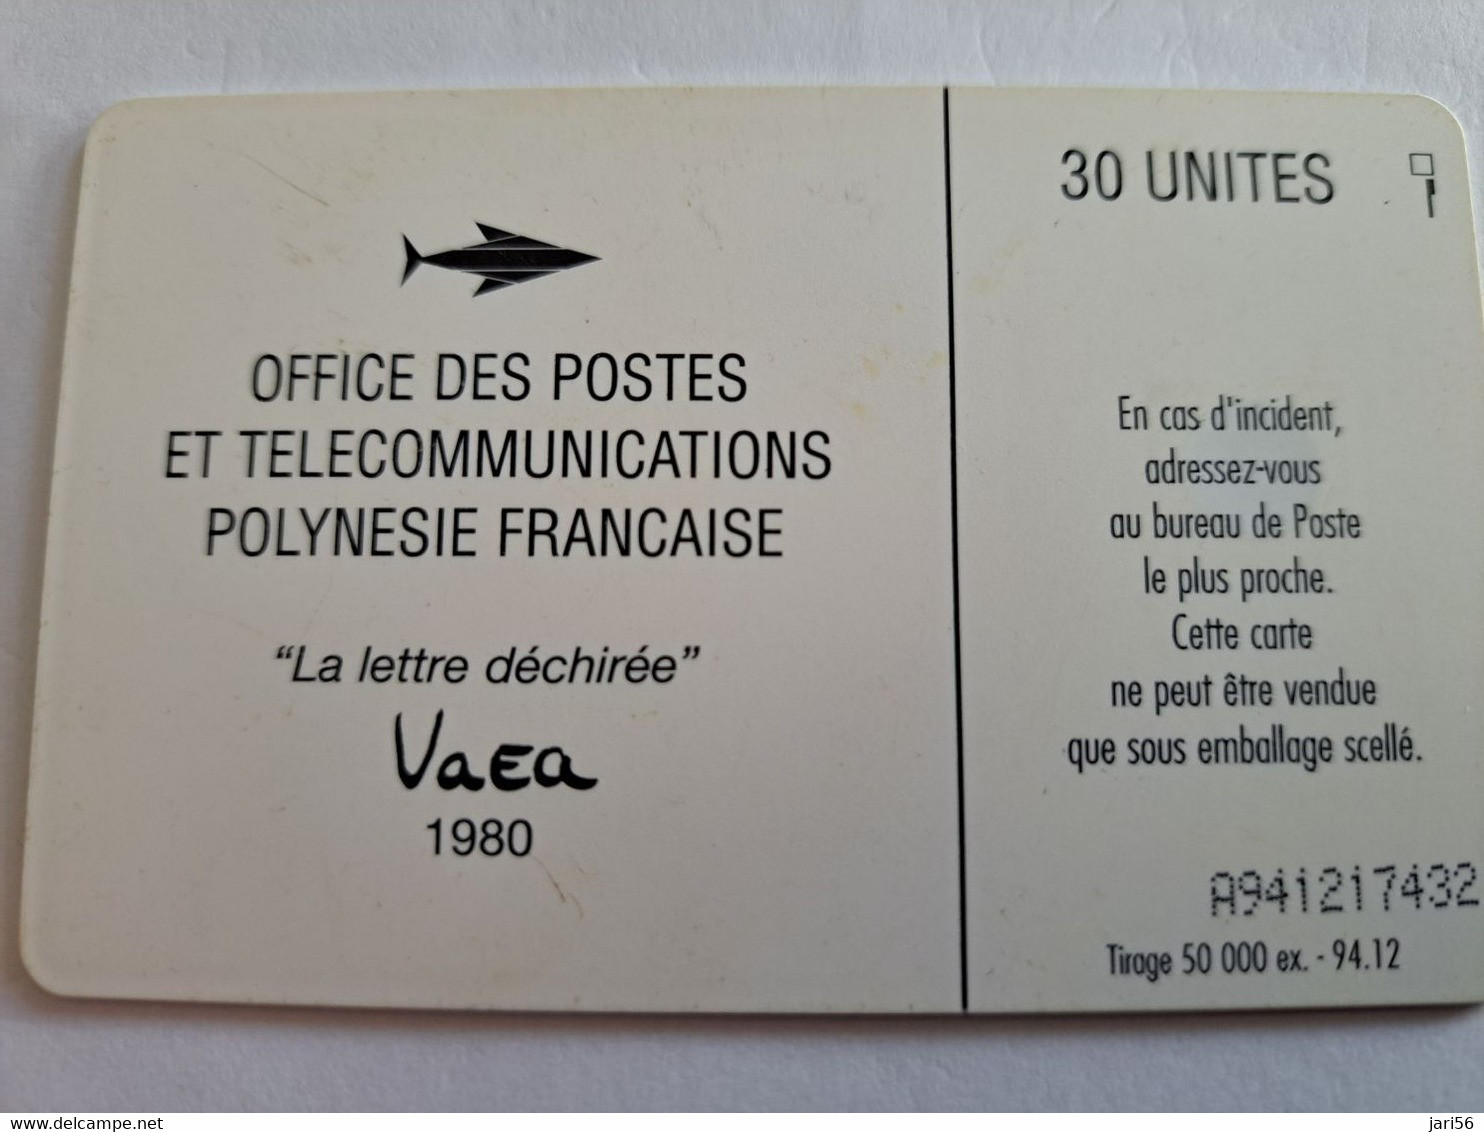 POLINESIA FRANCAISE  CHIPCARD  30 UNITS  LA LETTRE DECHIREE  VAEA 1980/ POLYNESIEN                **10469** - Polynésie Française